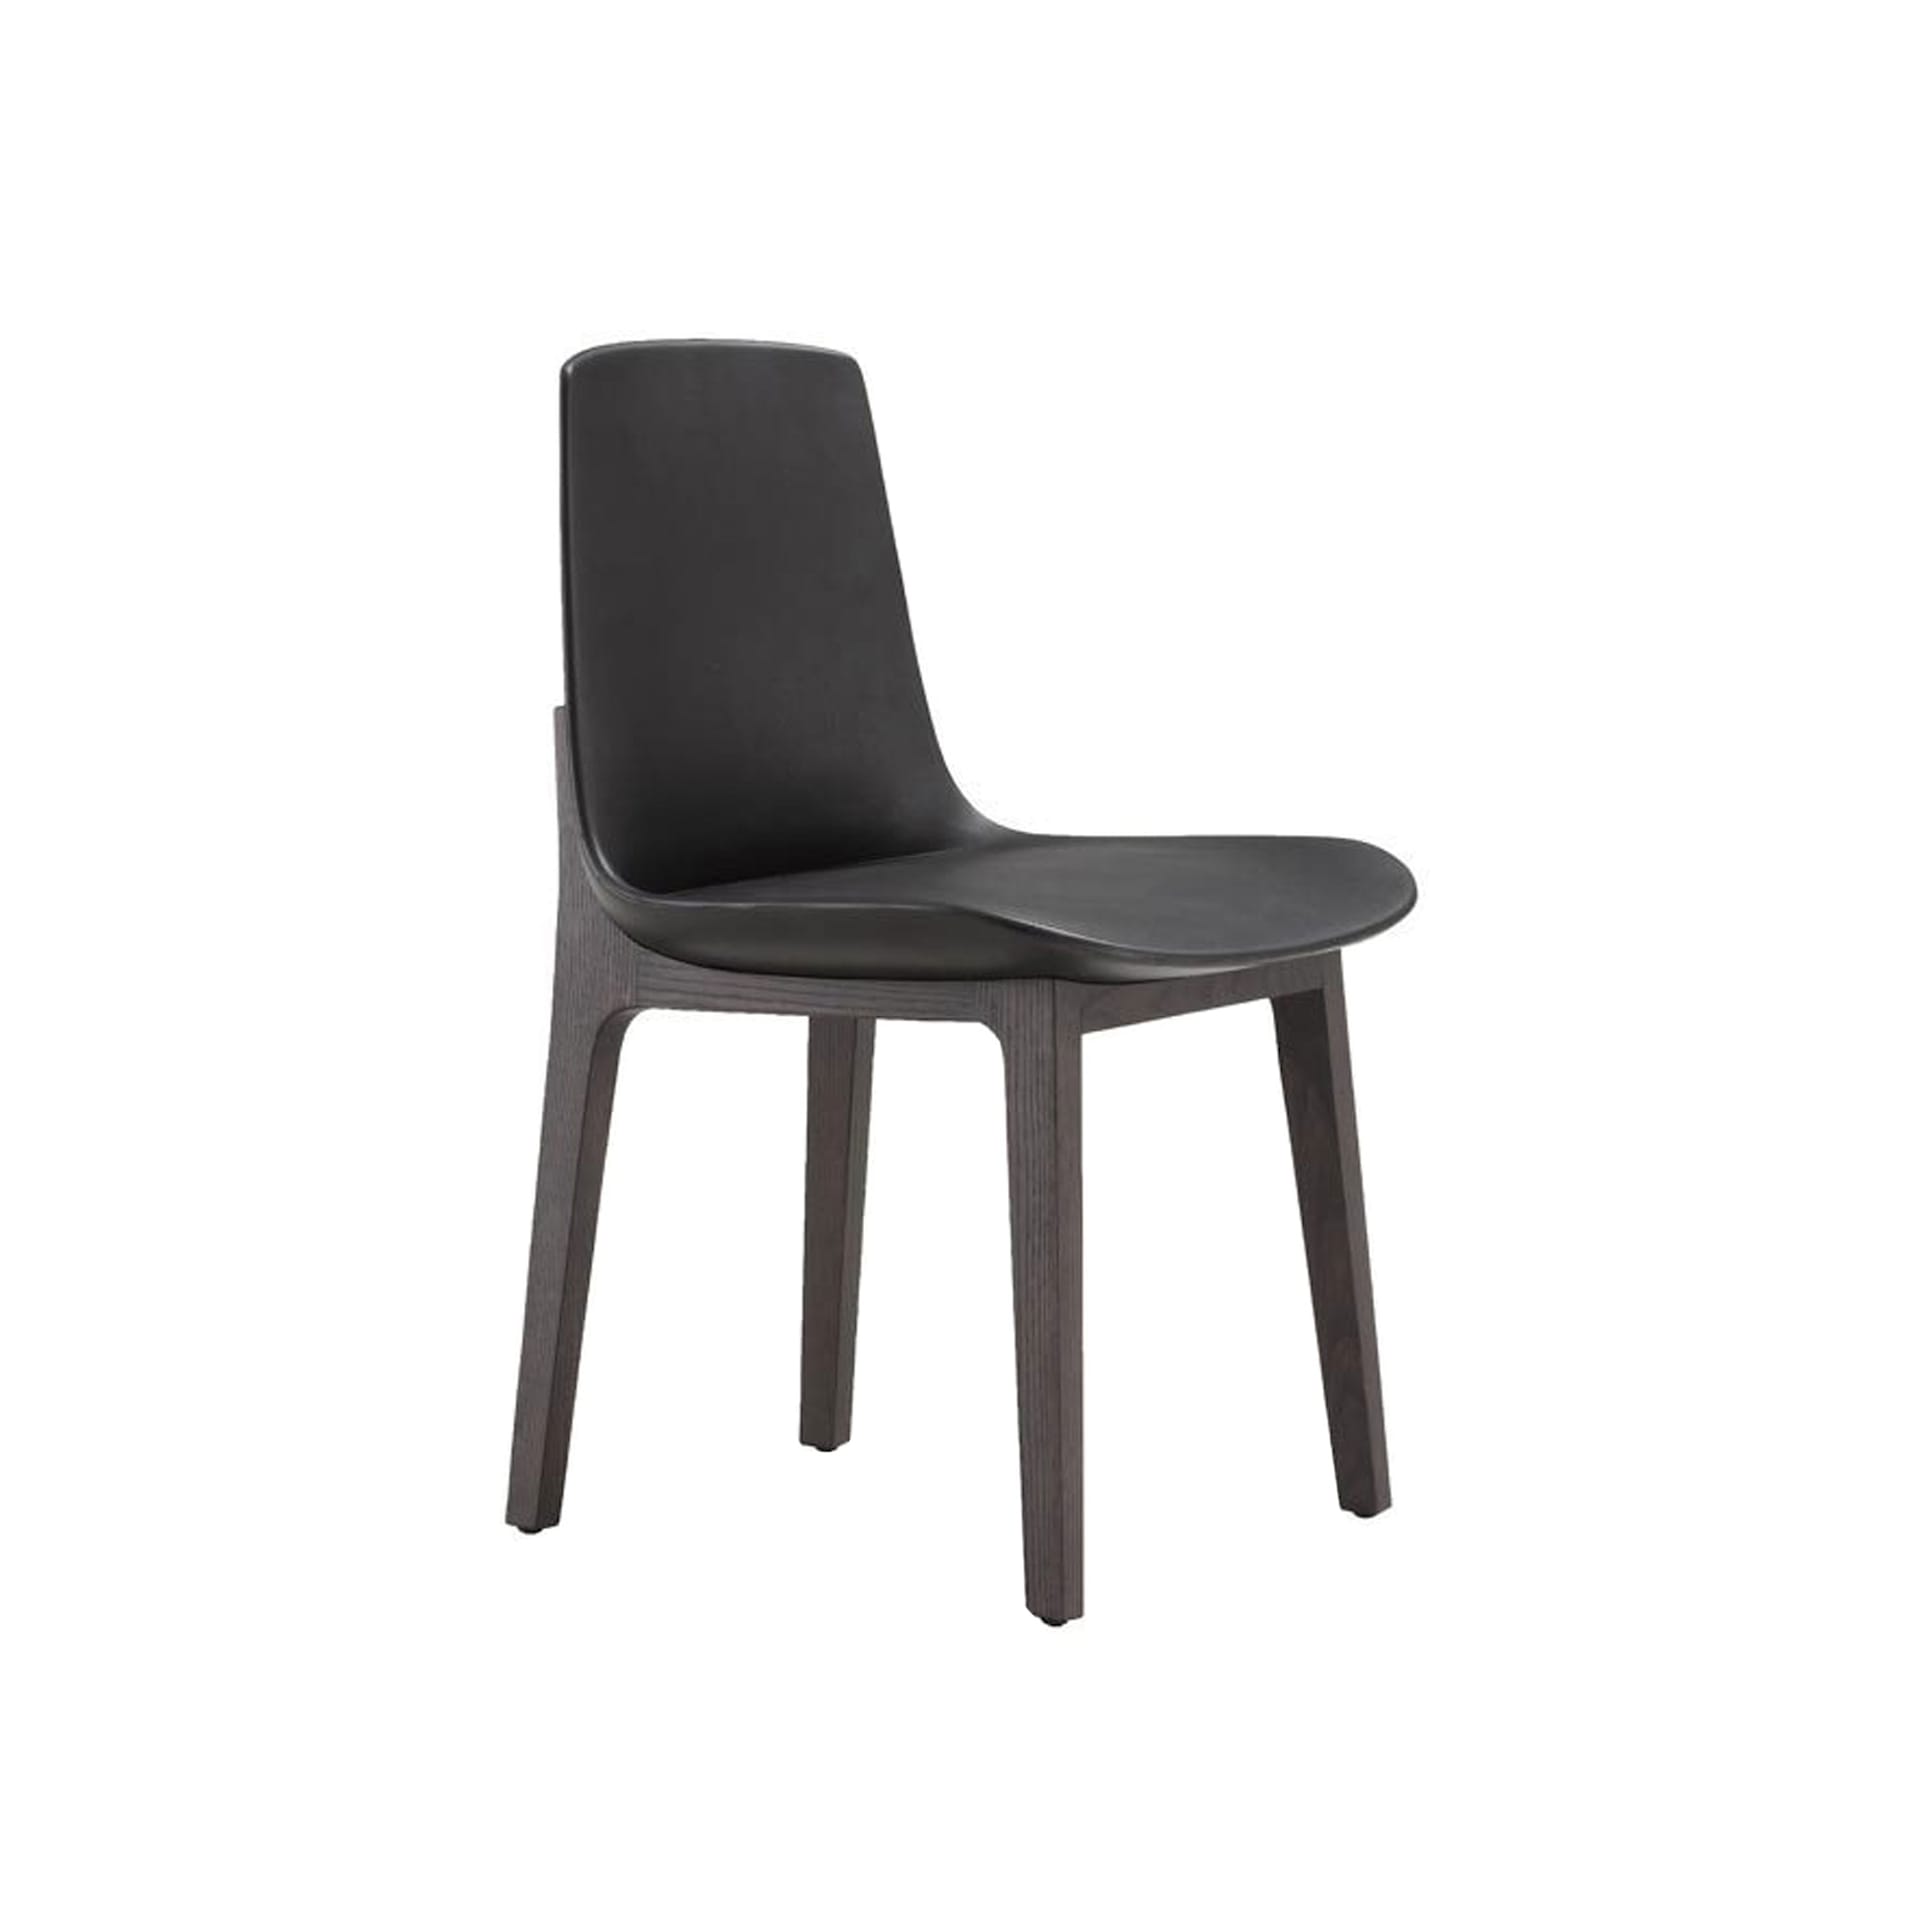 Ventura Chair - Poliform - NO GA